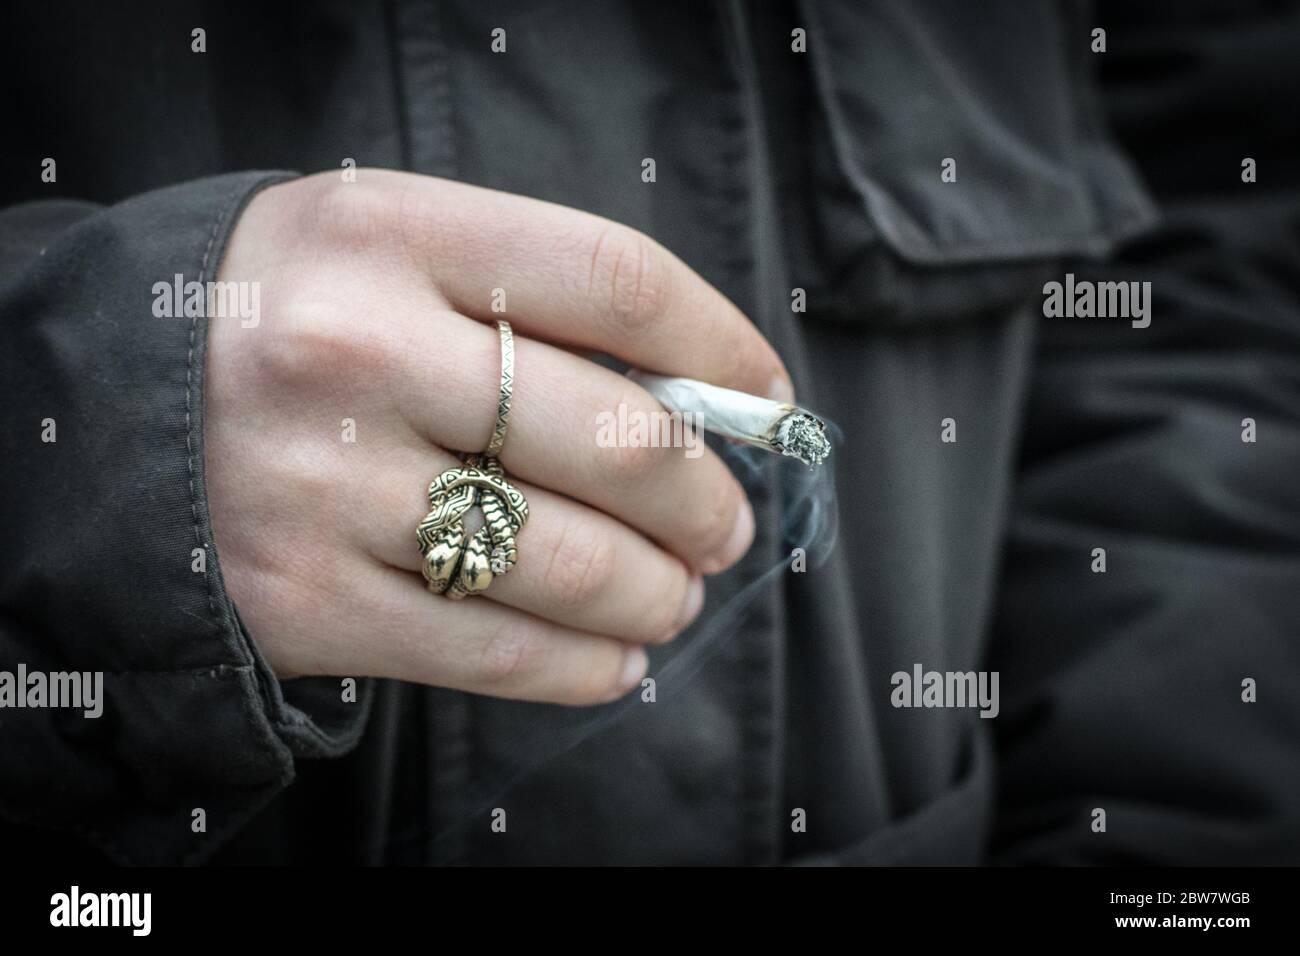 Jugendliche zeigt Fäuste mit Zigarette Stock Photo